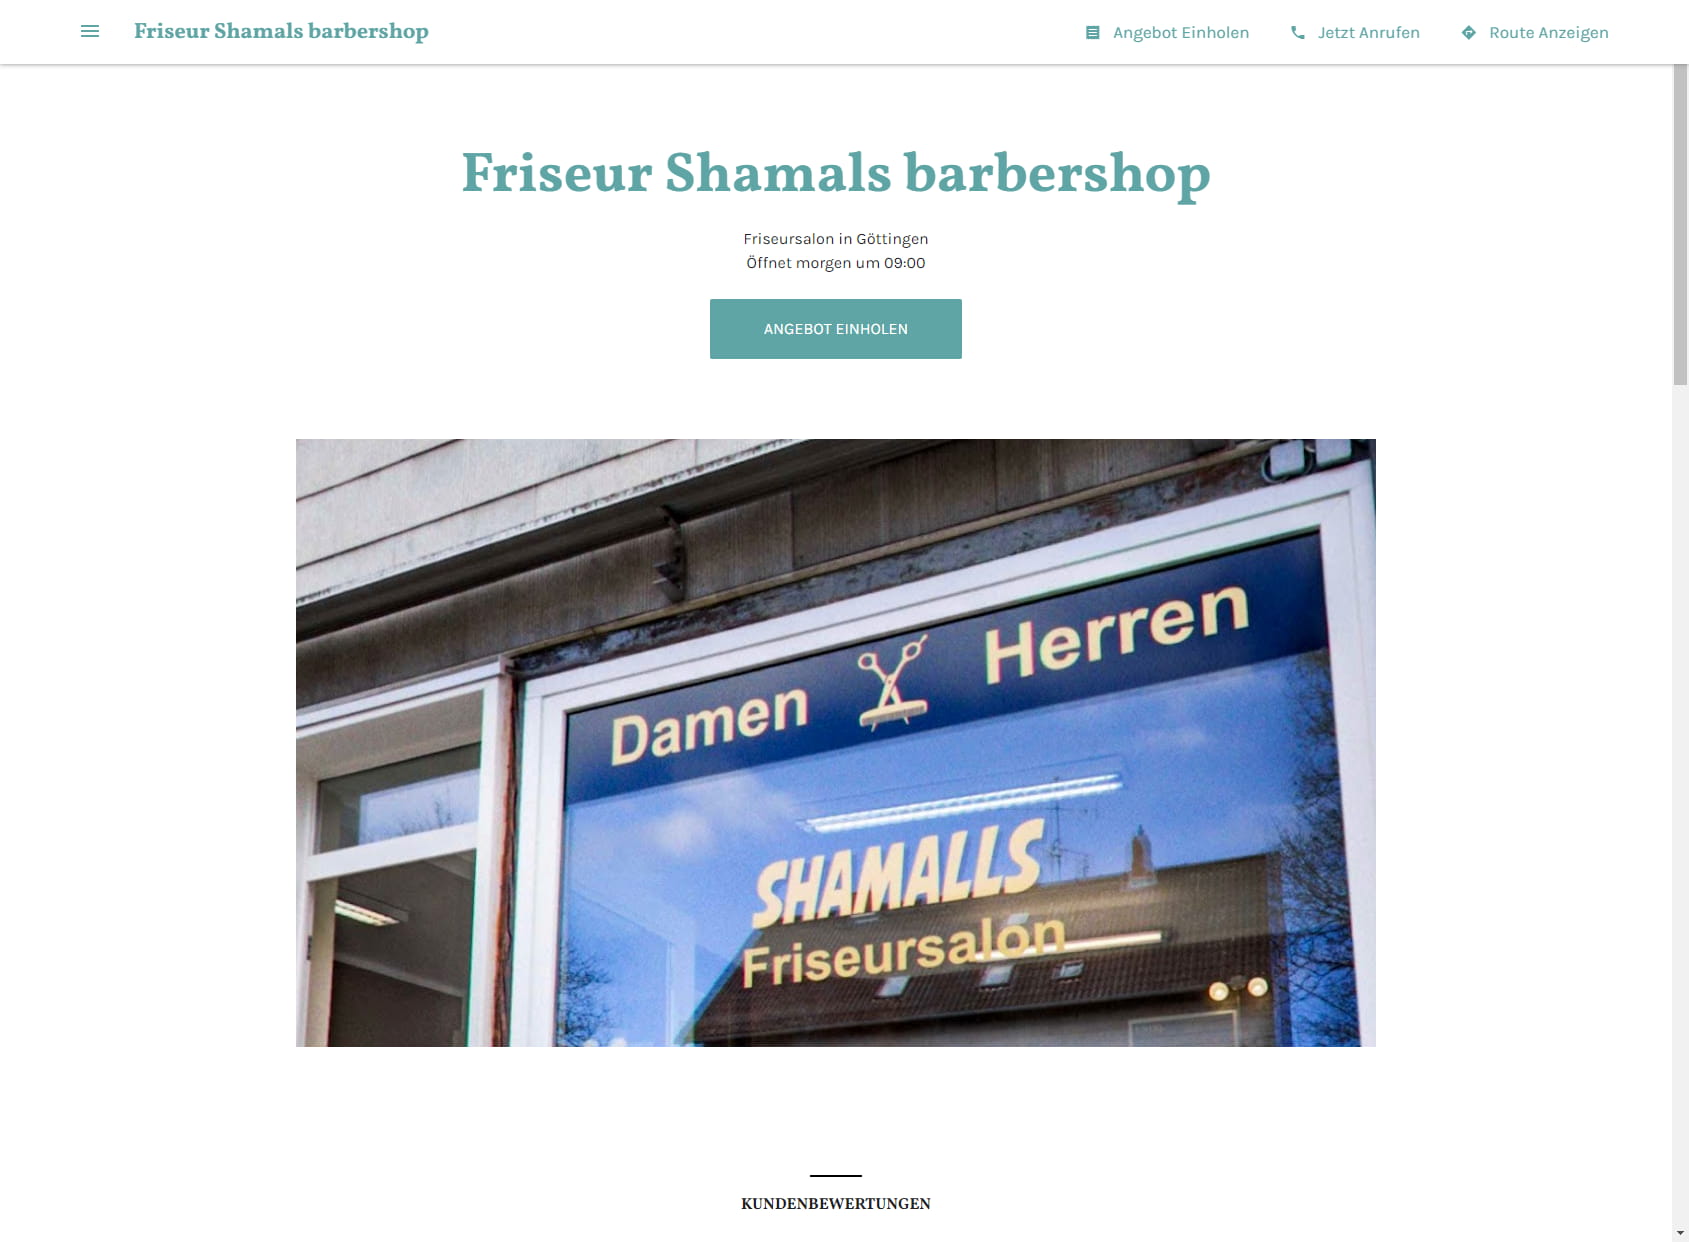 Friseur Shamals barbershop